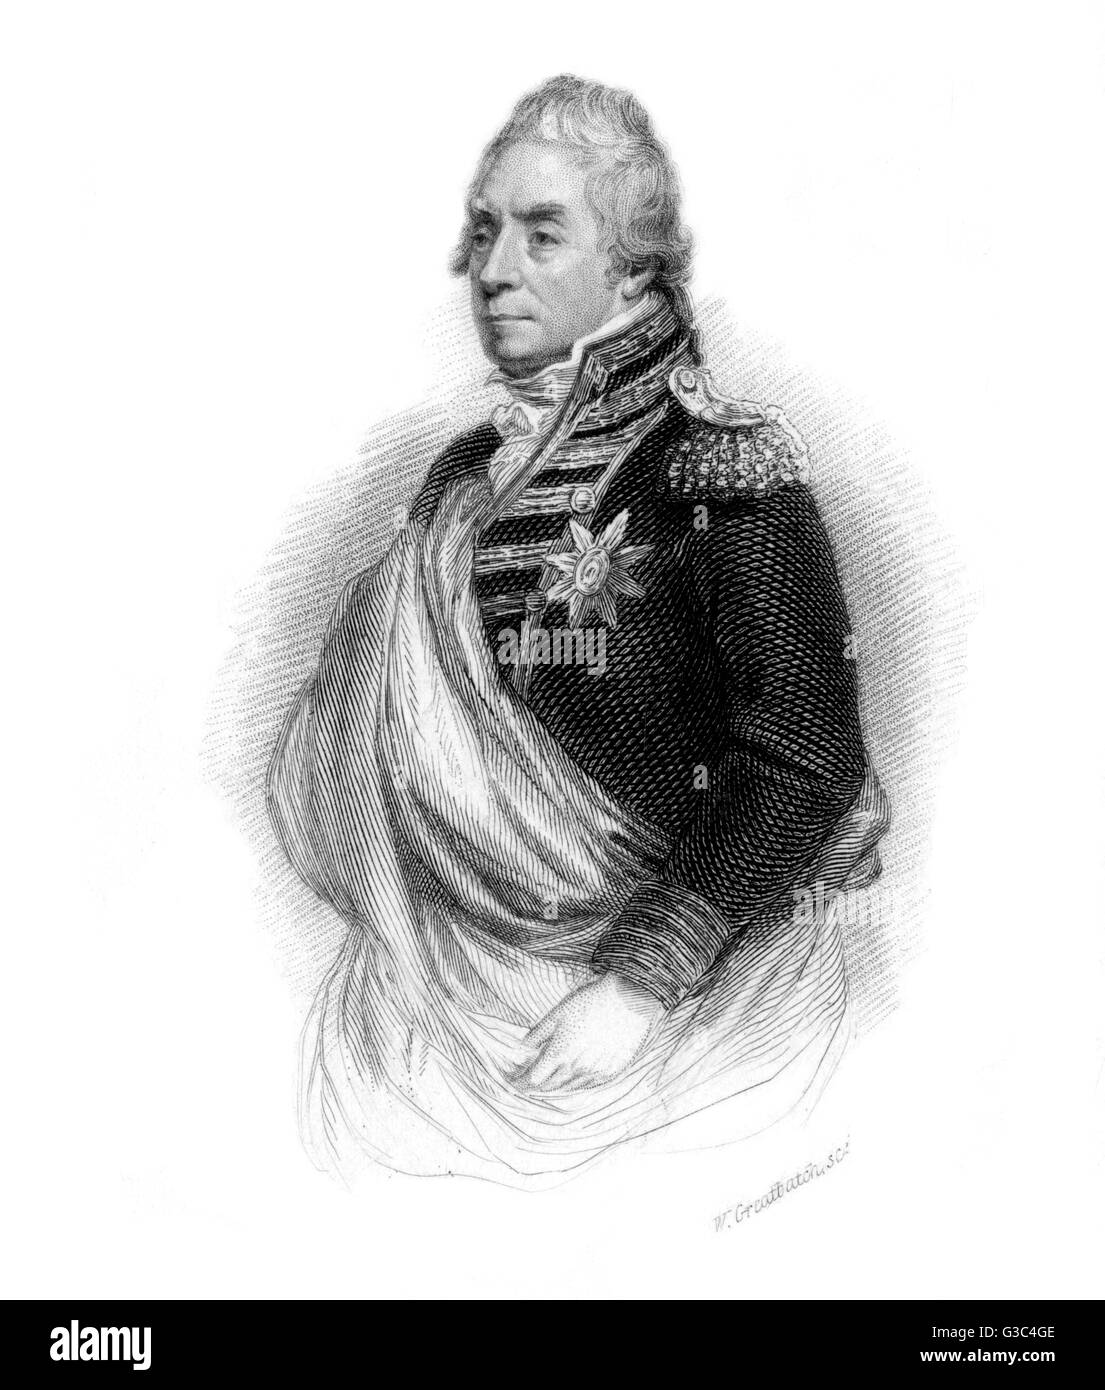 George Keith Elphinstone, primo Visconte Keith (1746-1823), navale britannica admiral attivo in tutto le guerre napoleoniche. Qui raffigurato in possesso della sua signoria. Data: circa 1810s Foto Stock